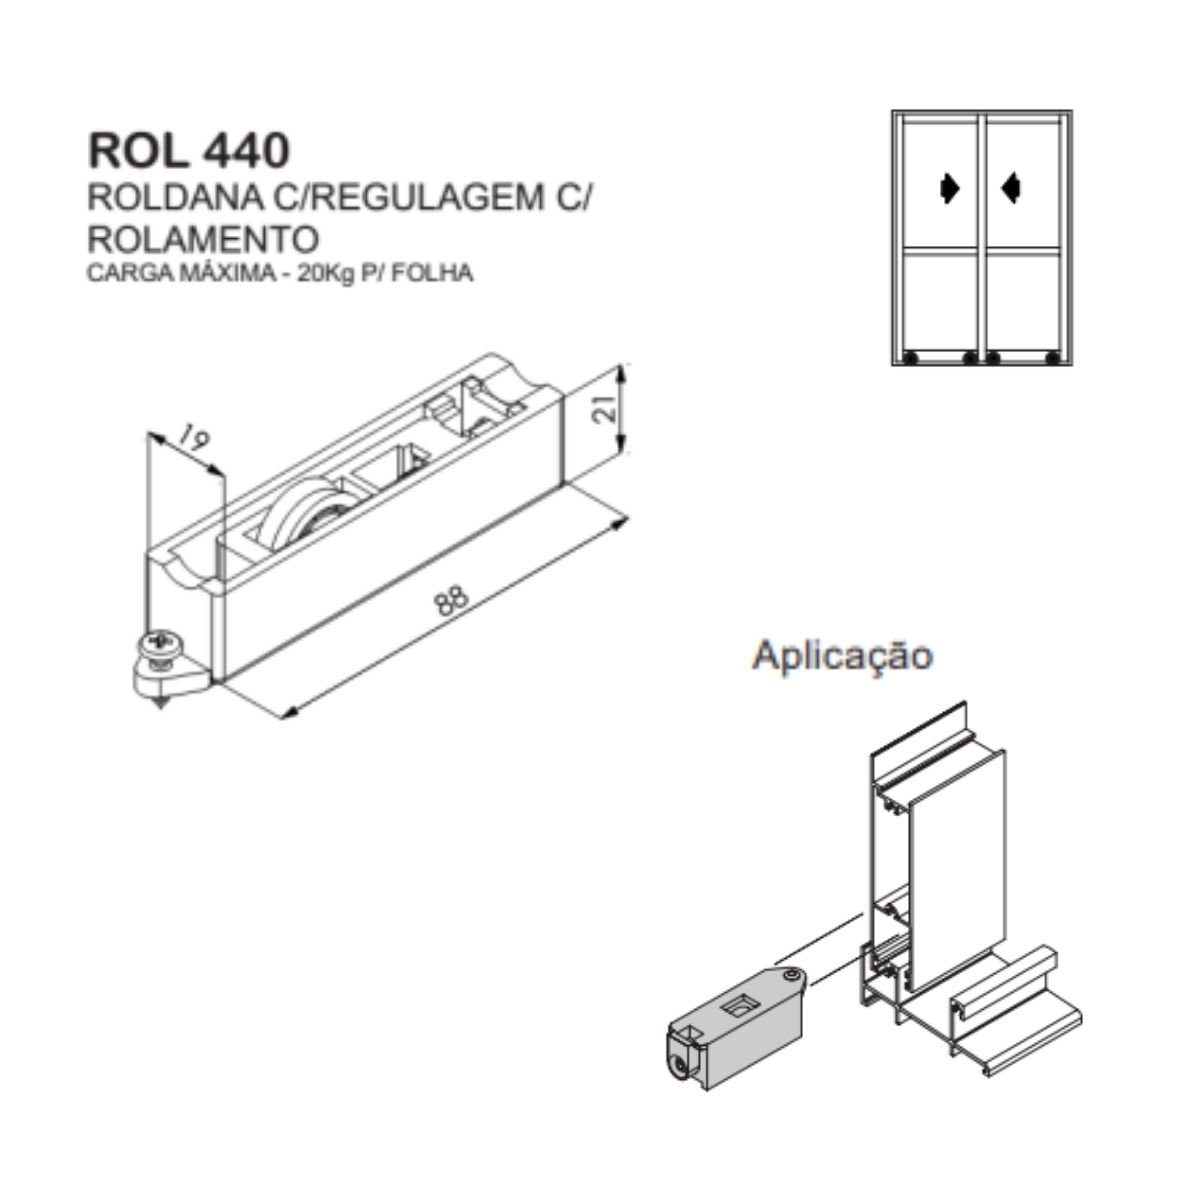 ROL 440 - Roldana simples com regulagem para janela e porta de correr de alumínio Suprema - 5